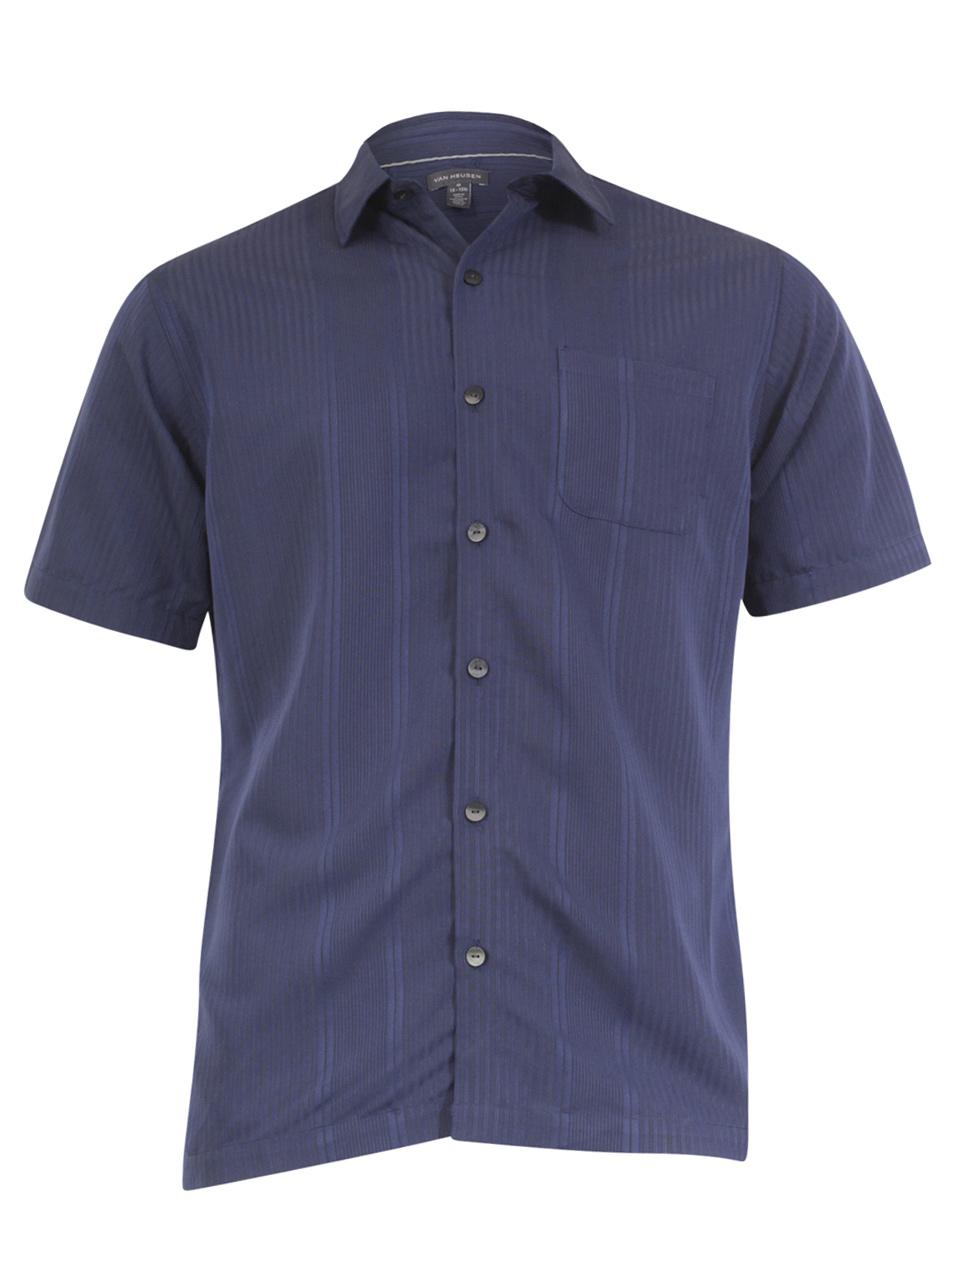 Van Heusen Men's Air Blue Faded Cadet Short Sleeve Button Down Shirt Sz ...